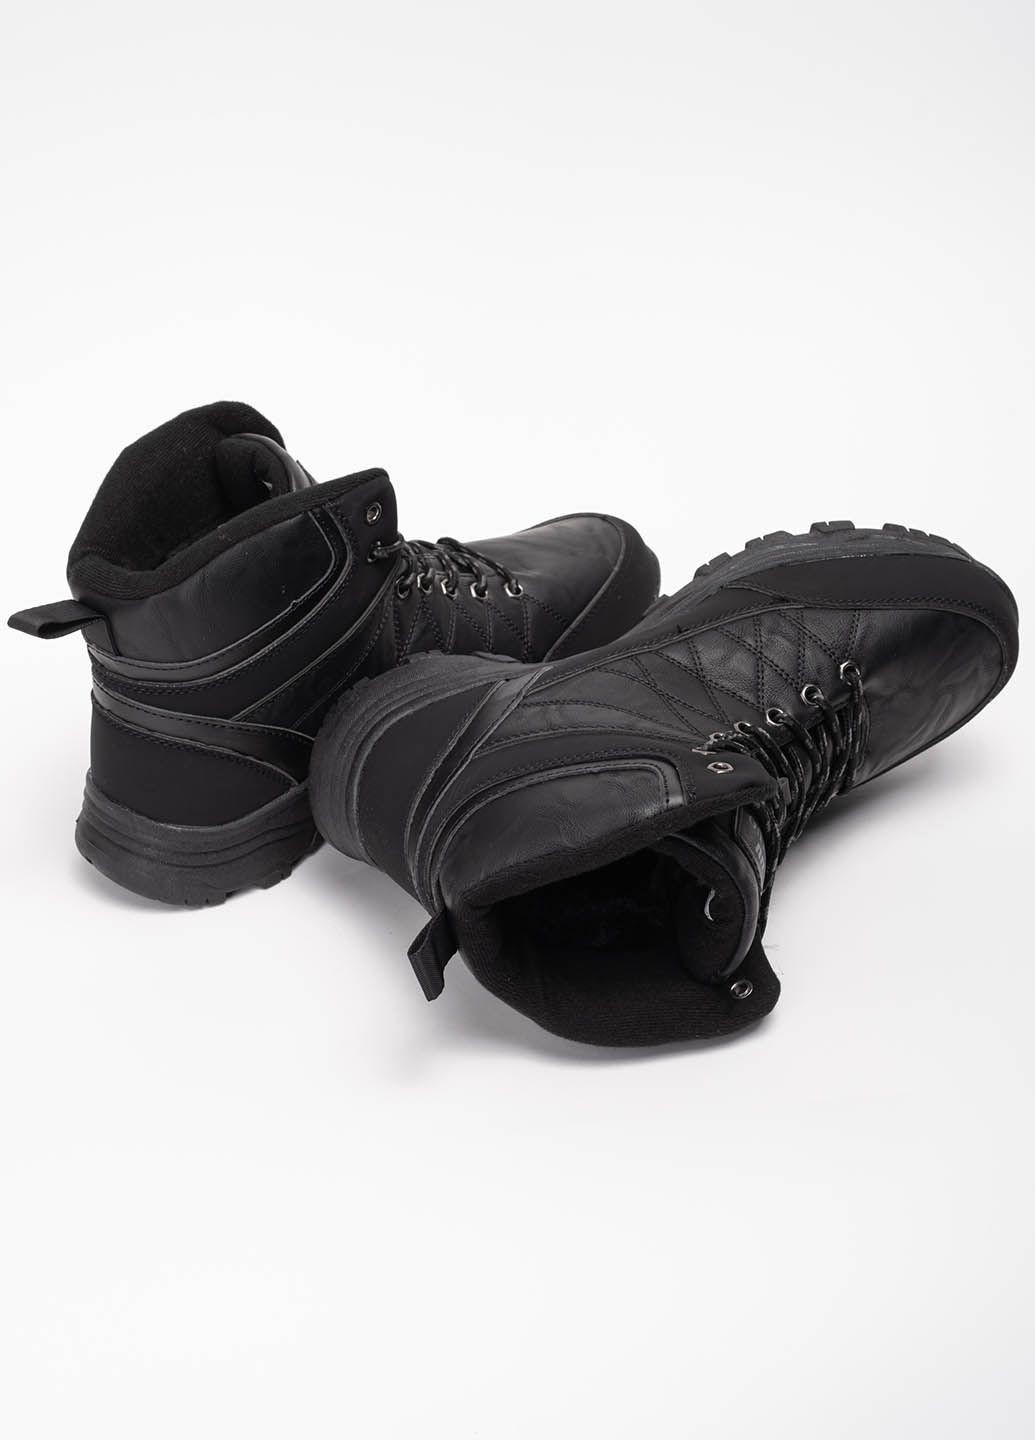 Черные зимние ботинки мужские спортивные 342366 Power